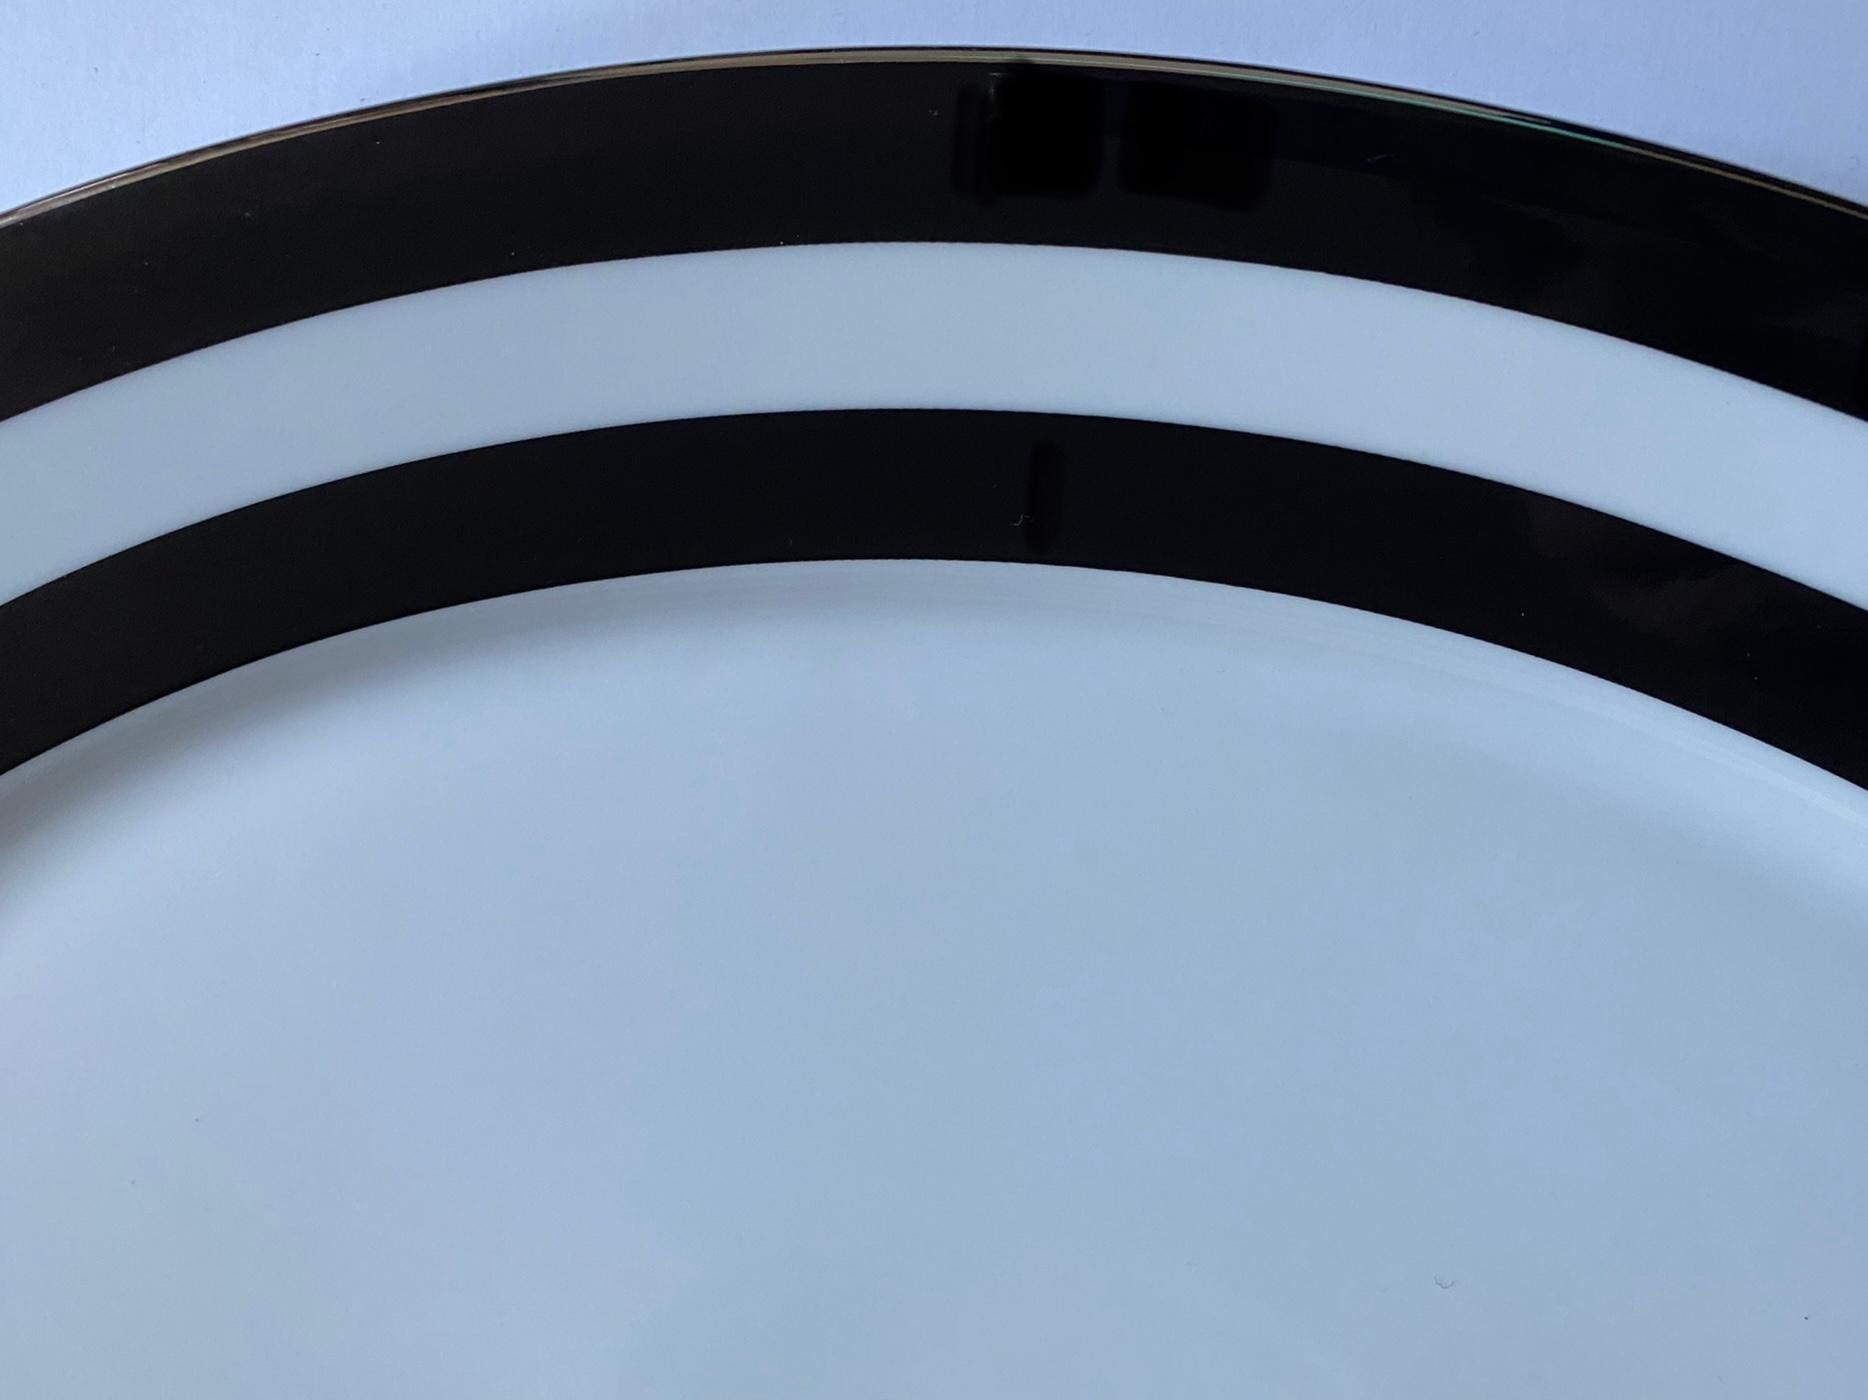 Eine ovale Servierplatte mit dem Muster Spectator Black der Collection'S von Ralph Lauren Home. Knochenporzellan. Unterschrieben. Importiert, Produktionszeitraum 1995-2002.

Ein breiter schwarzer Doppelstreifen wird durch eine